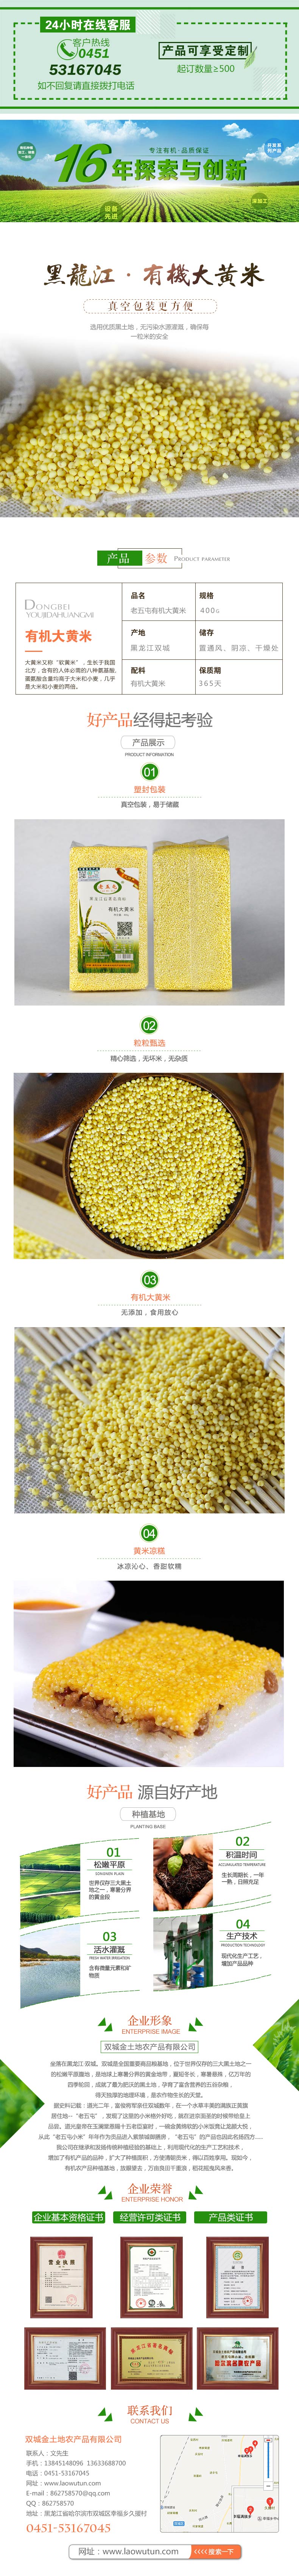 大黄米多少钱